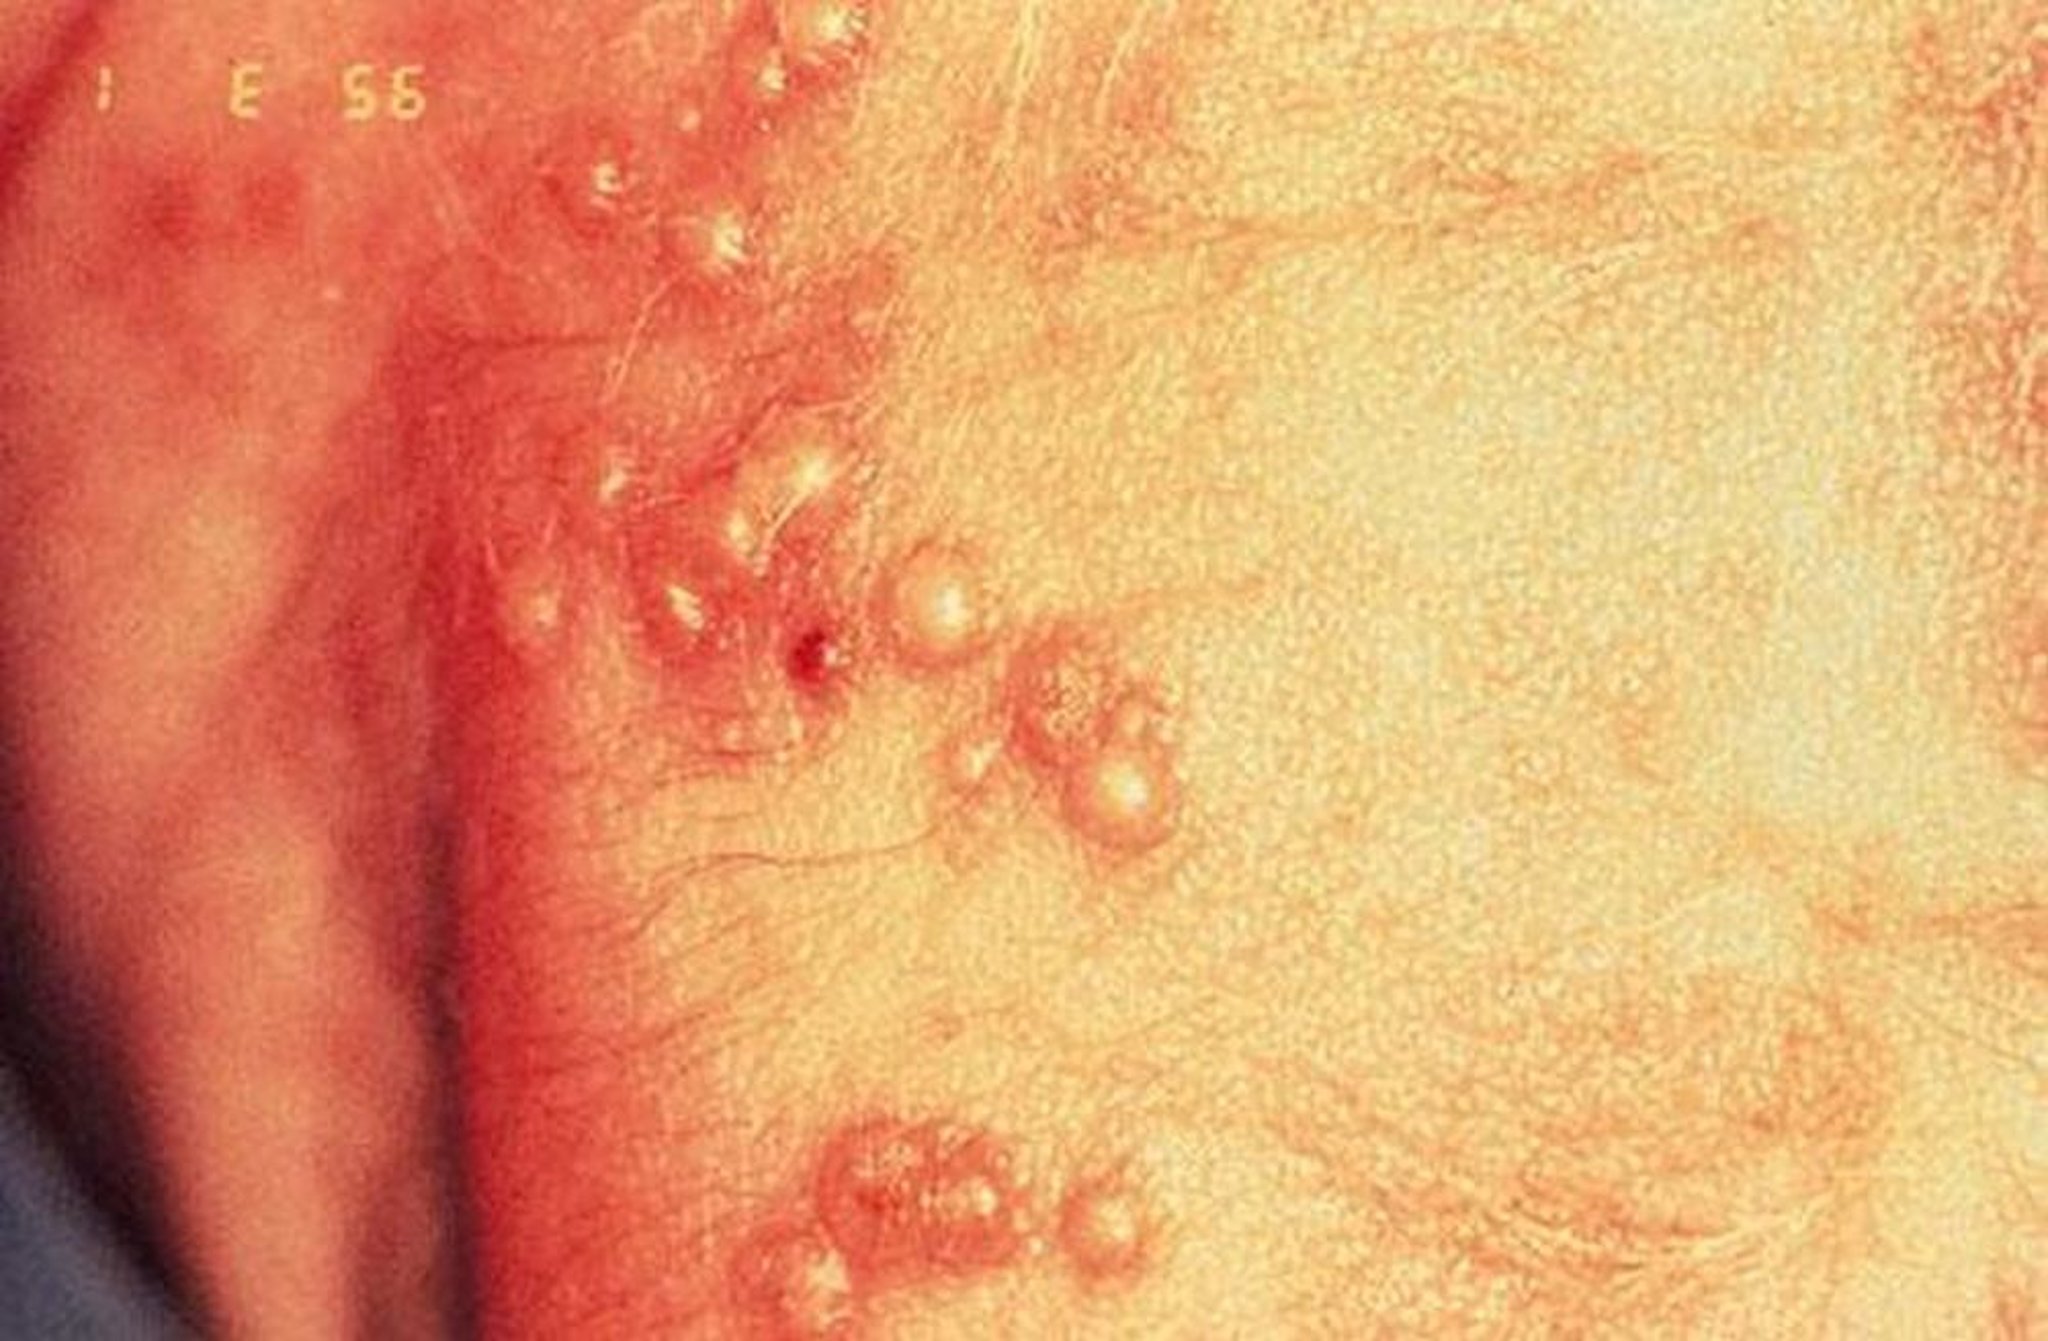 Infecção no recém-nascido por vírus do herpes simples